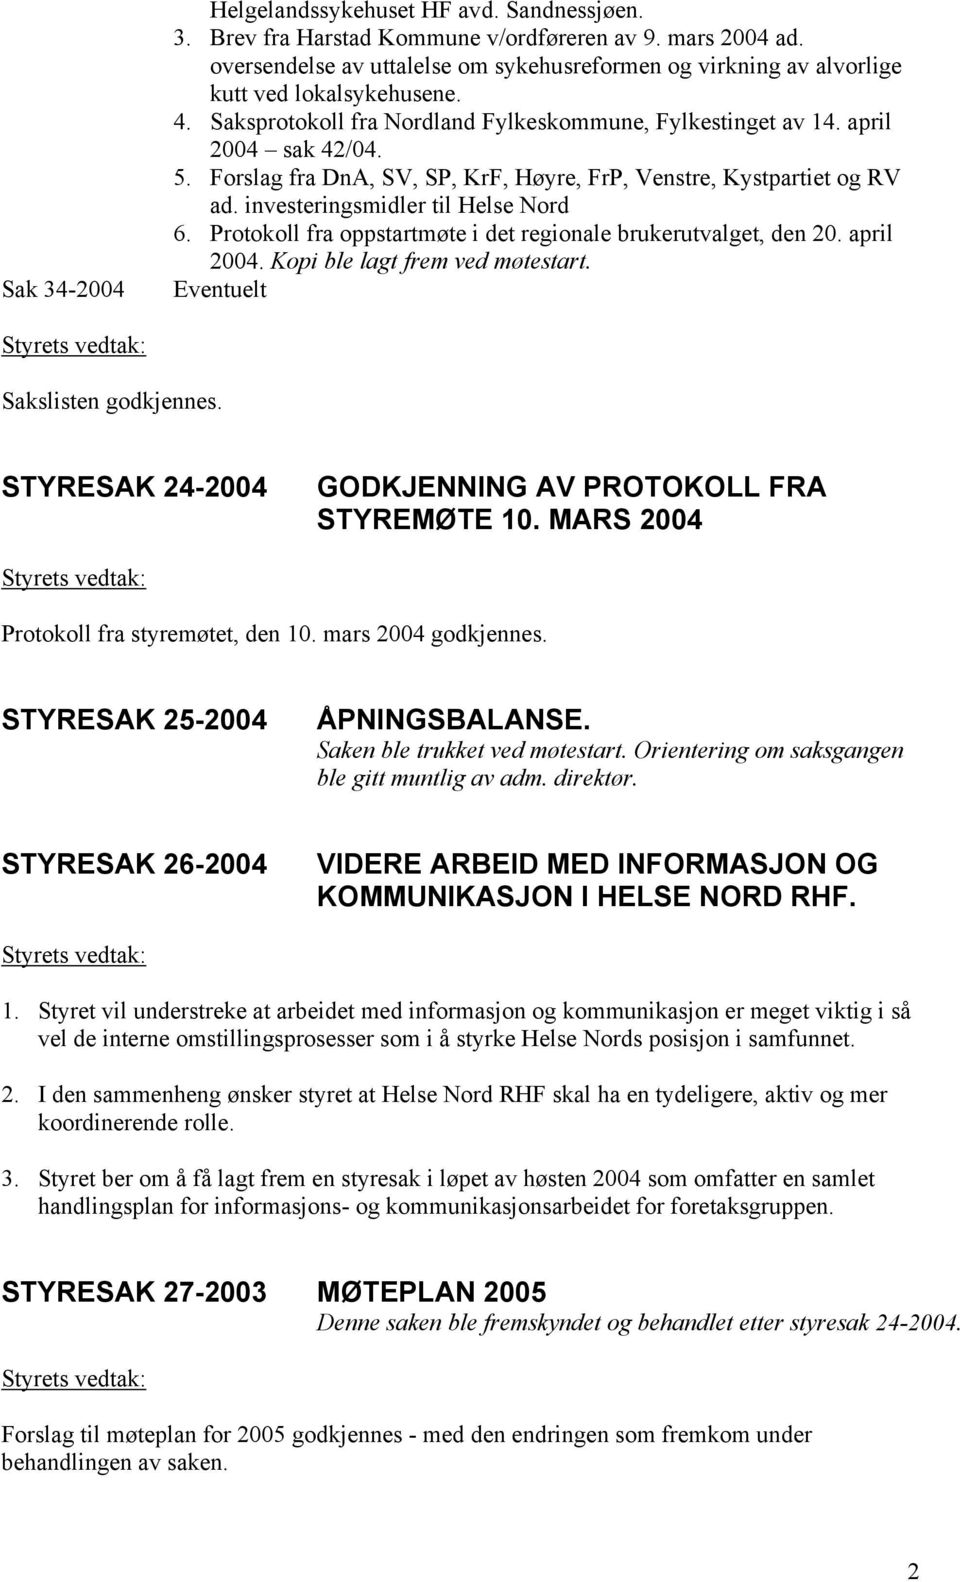 Forslag fra DnA, SV, SP, KrF, Høyre, FrP, Venstre, Kystpartiet og RV ad. investeringsmidler til Helse Nord 6. Protokoll fra oppstartmøte i det regionale brukerutvalget, den 20. april 2004.